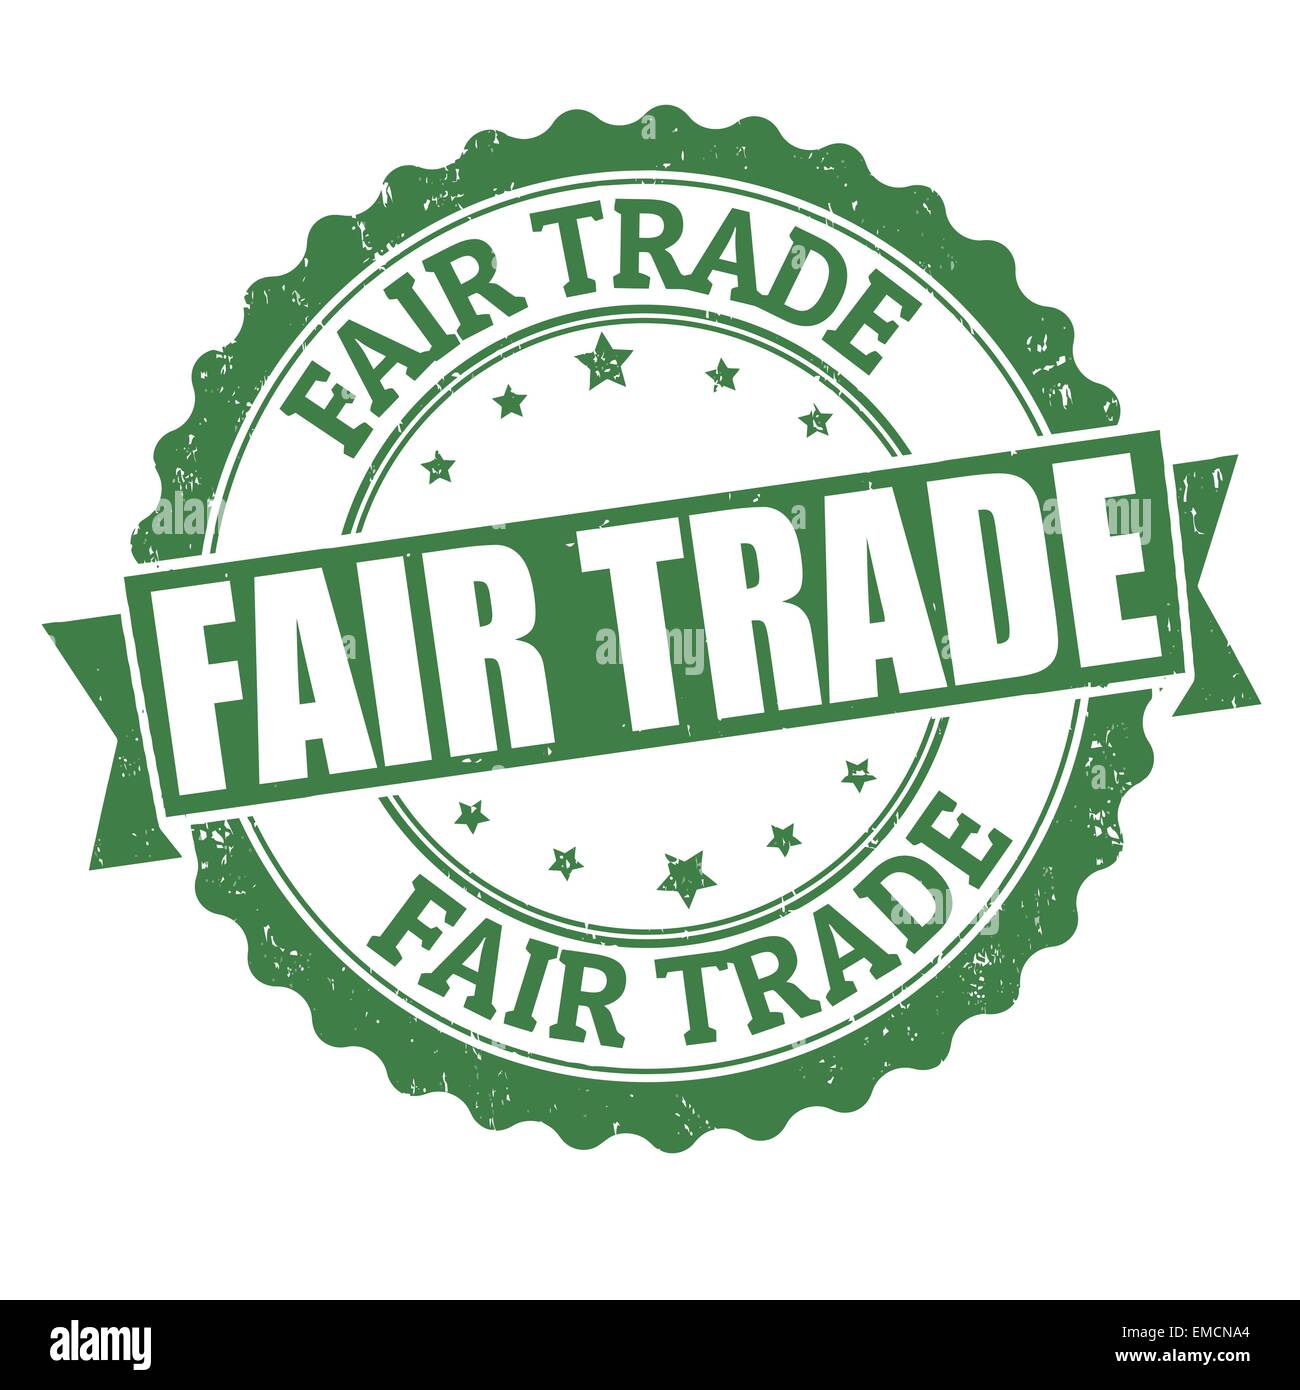 Fair trade stamp Stock Vector